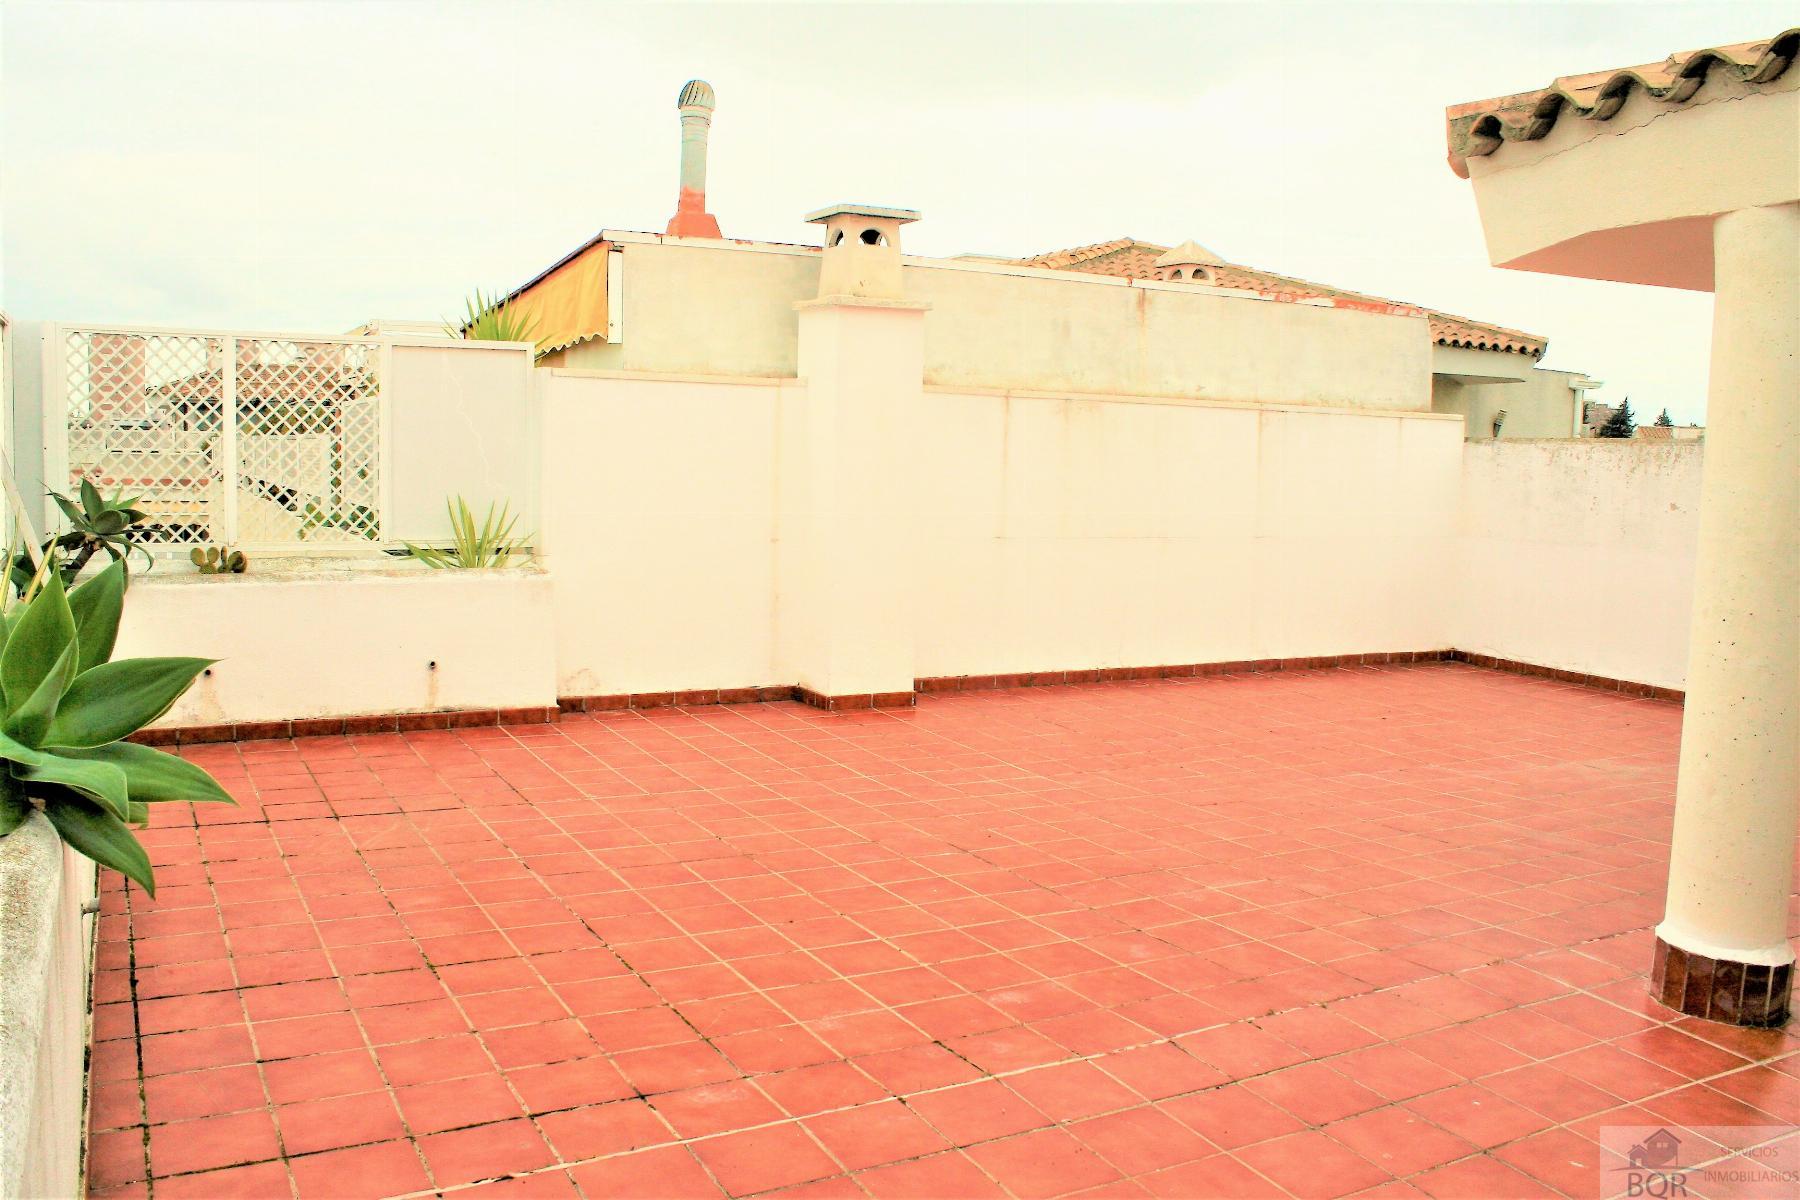 Köp av takvåning i Jerez de la Frontera